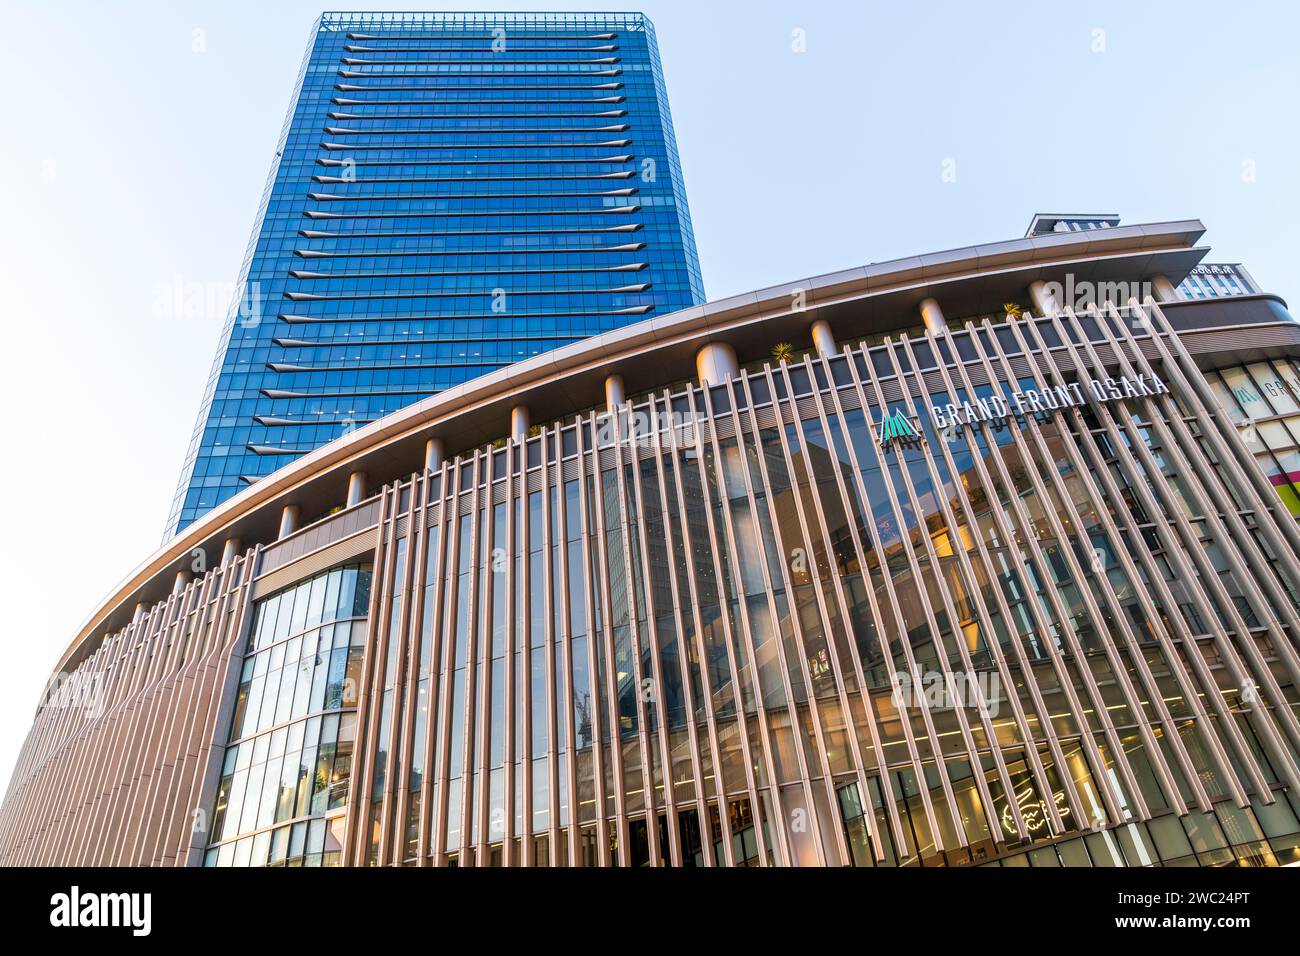 Vue de l'heure d'or, parvis de la gare d'Osaka et impressionnant complexe commercial Osaka Grand Front, avec des immeubles de bureaux en hauteur derrière. Banque D'Images